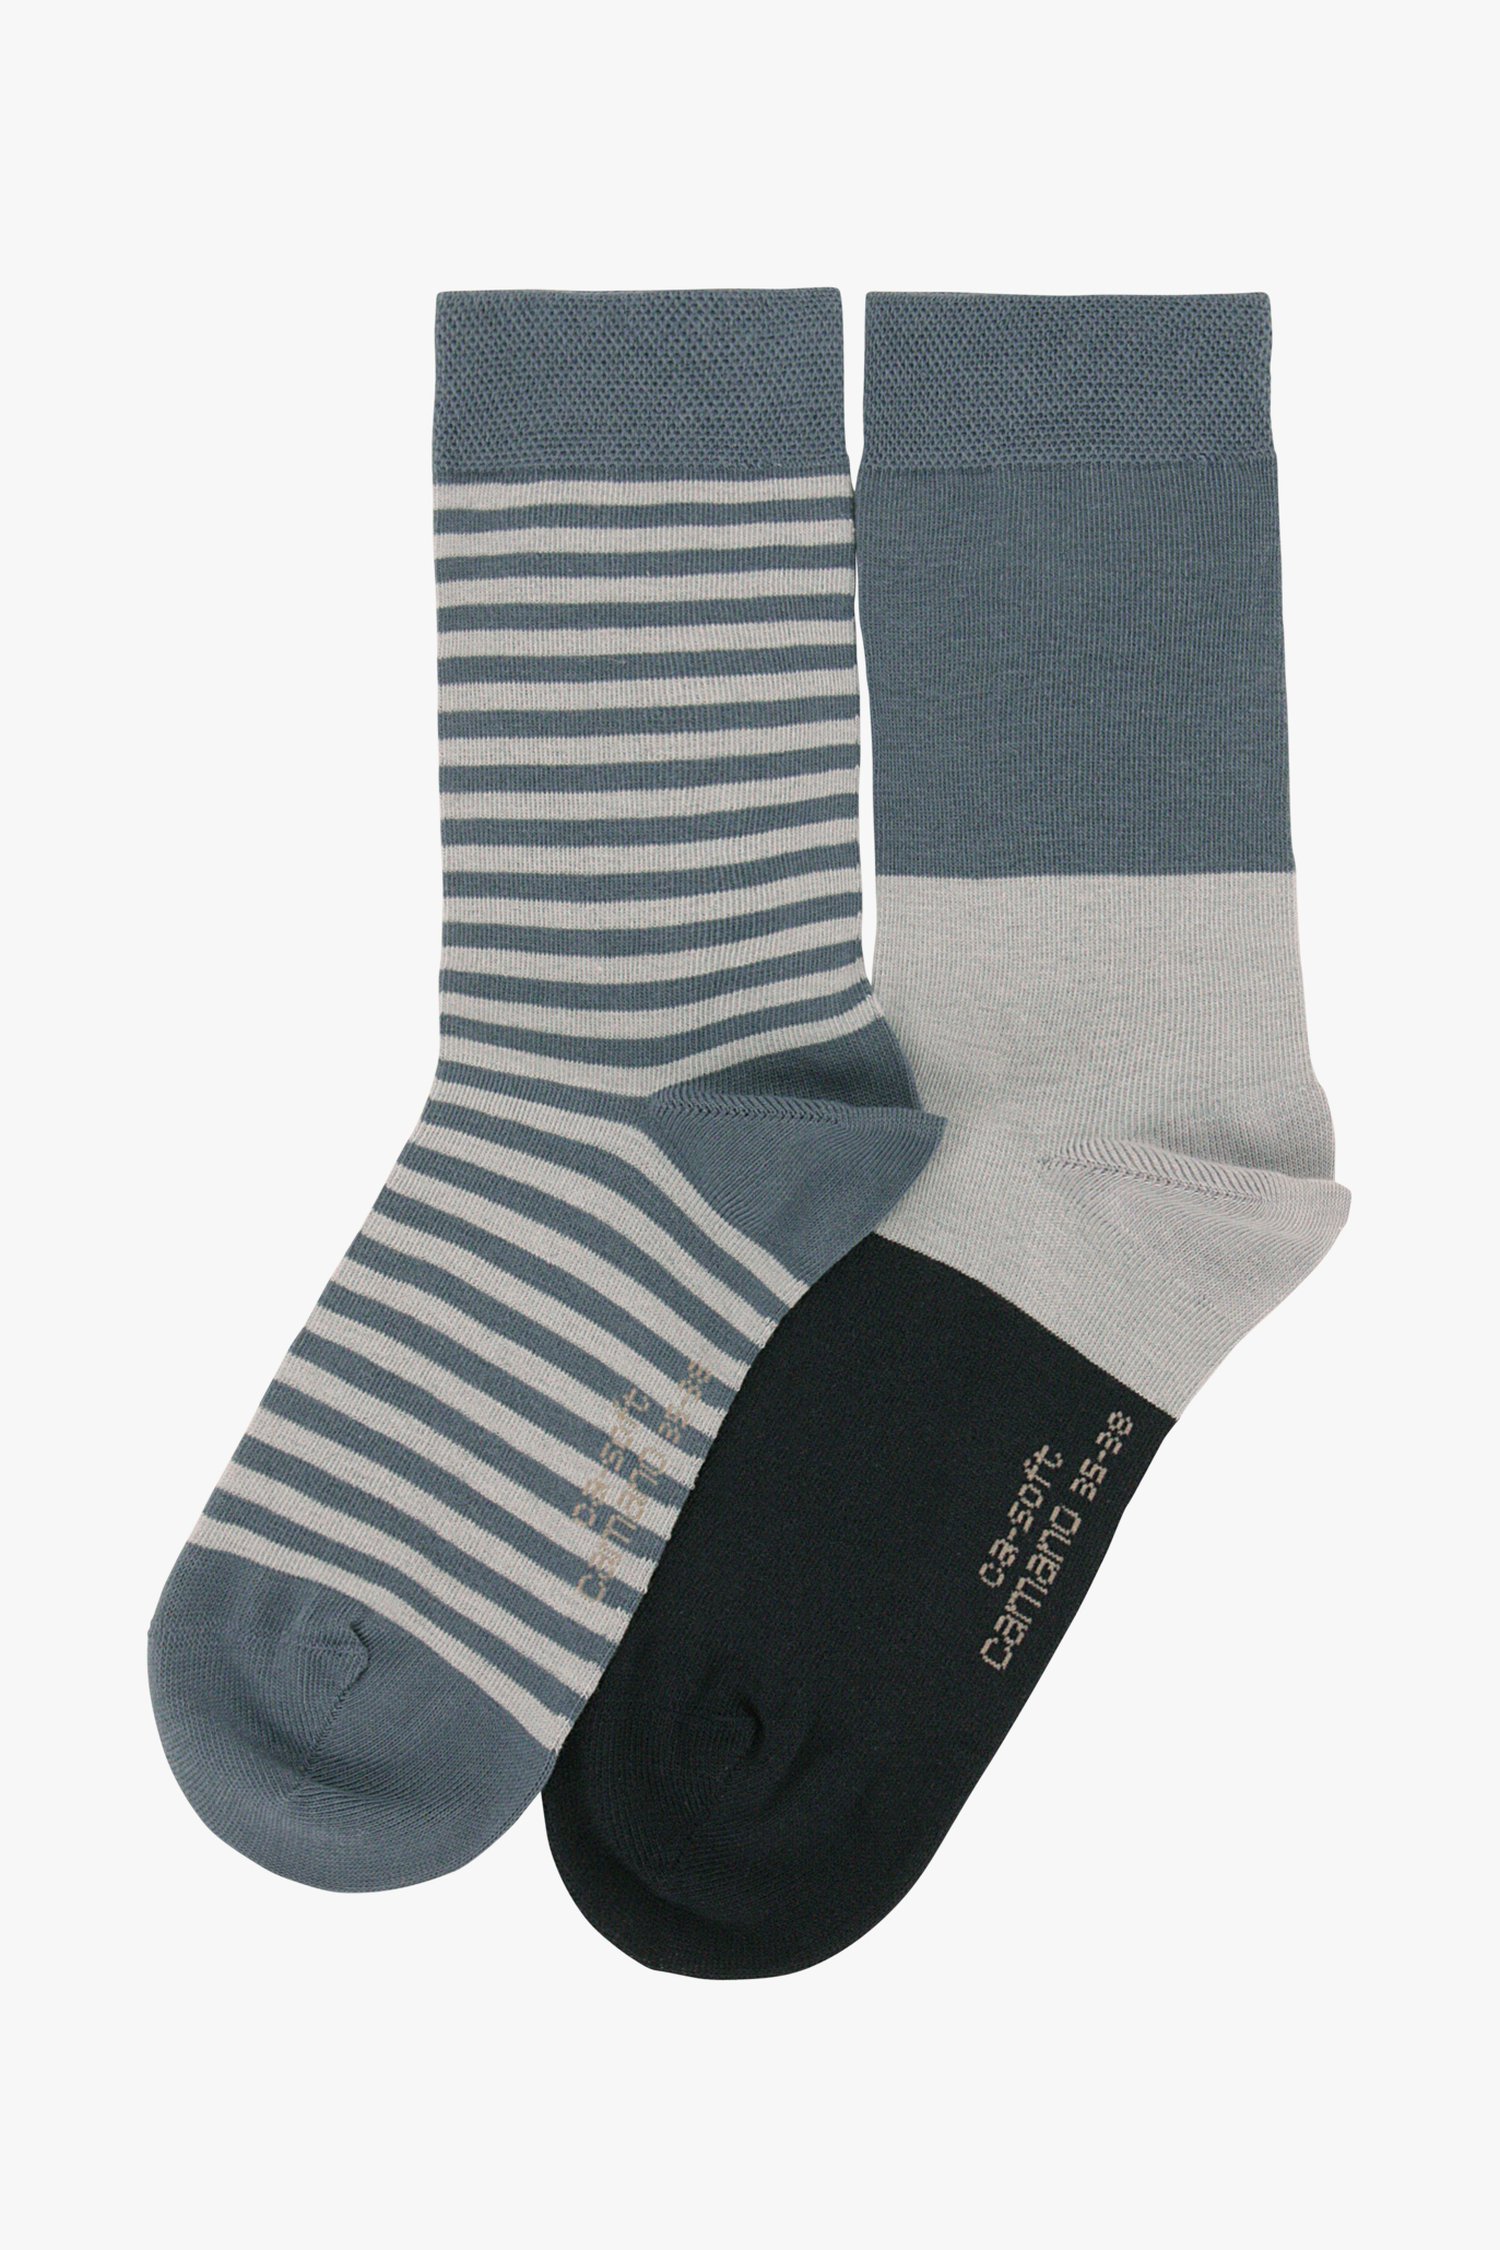 Blauwe & gestreepte sokken - 2 paar van Camano voor Dames